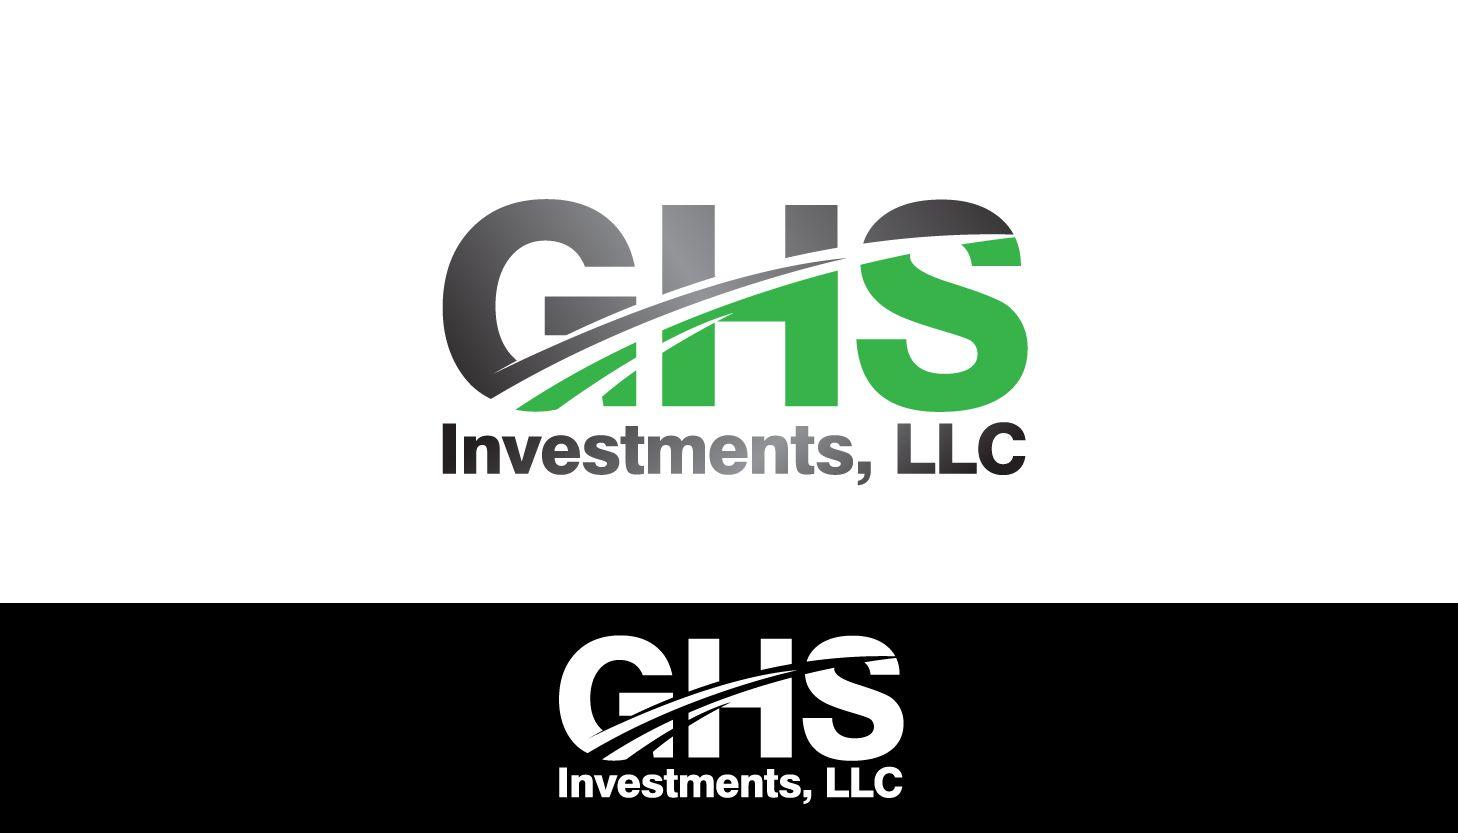 GHS Logo - Upmarket, Bold, Finance Logo Design for GHS Investments, LLC by ...